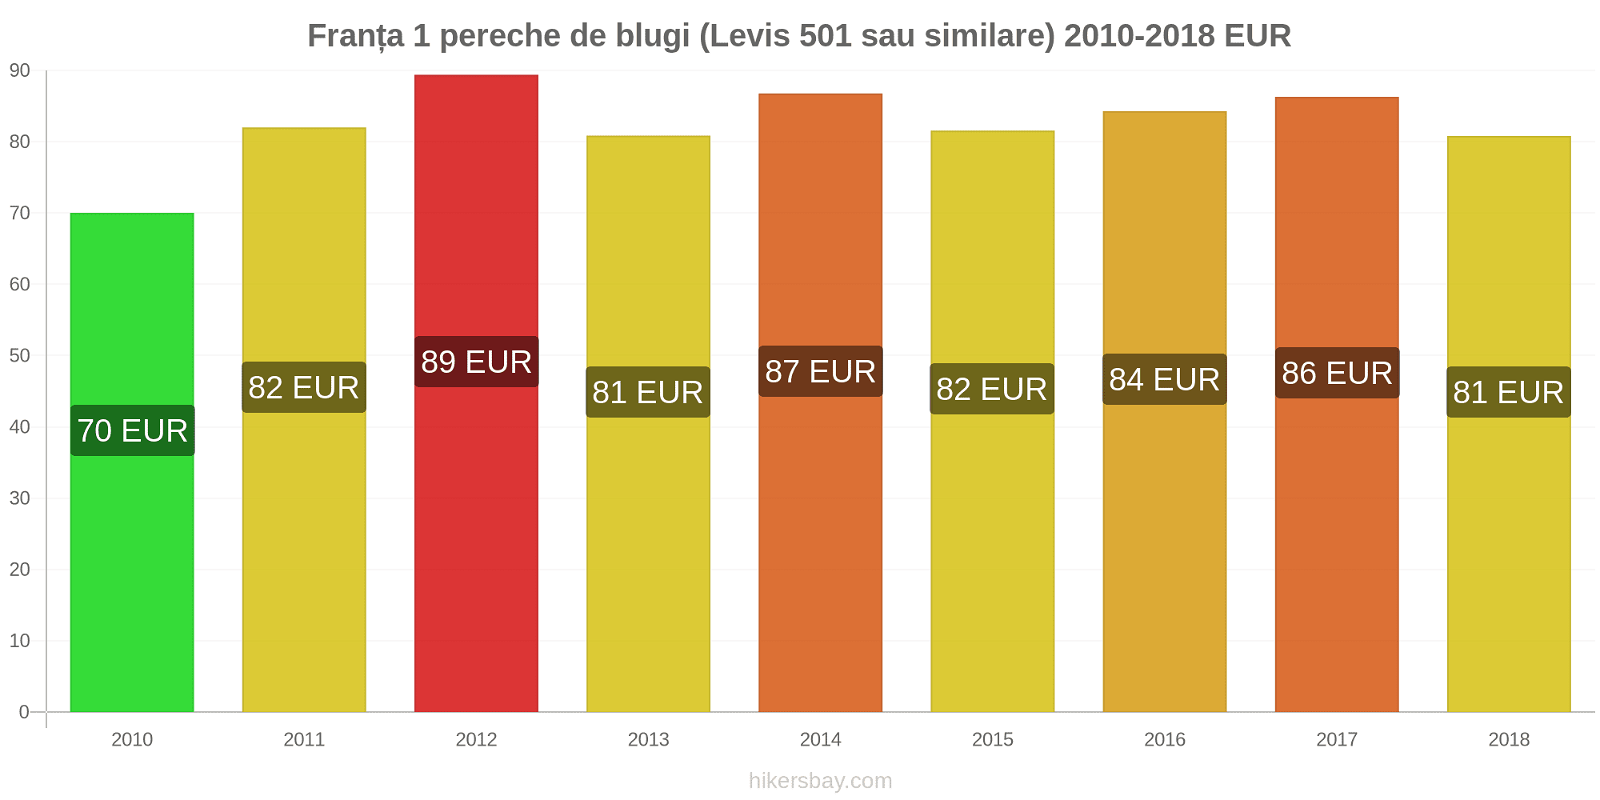 Franța schimbări de prețuri 1 pereche de blugi (Levis 501 sau similare) hikersbay.com